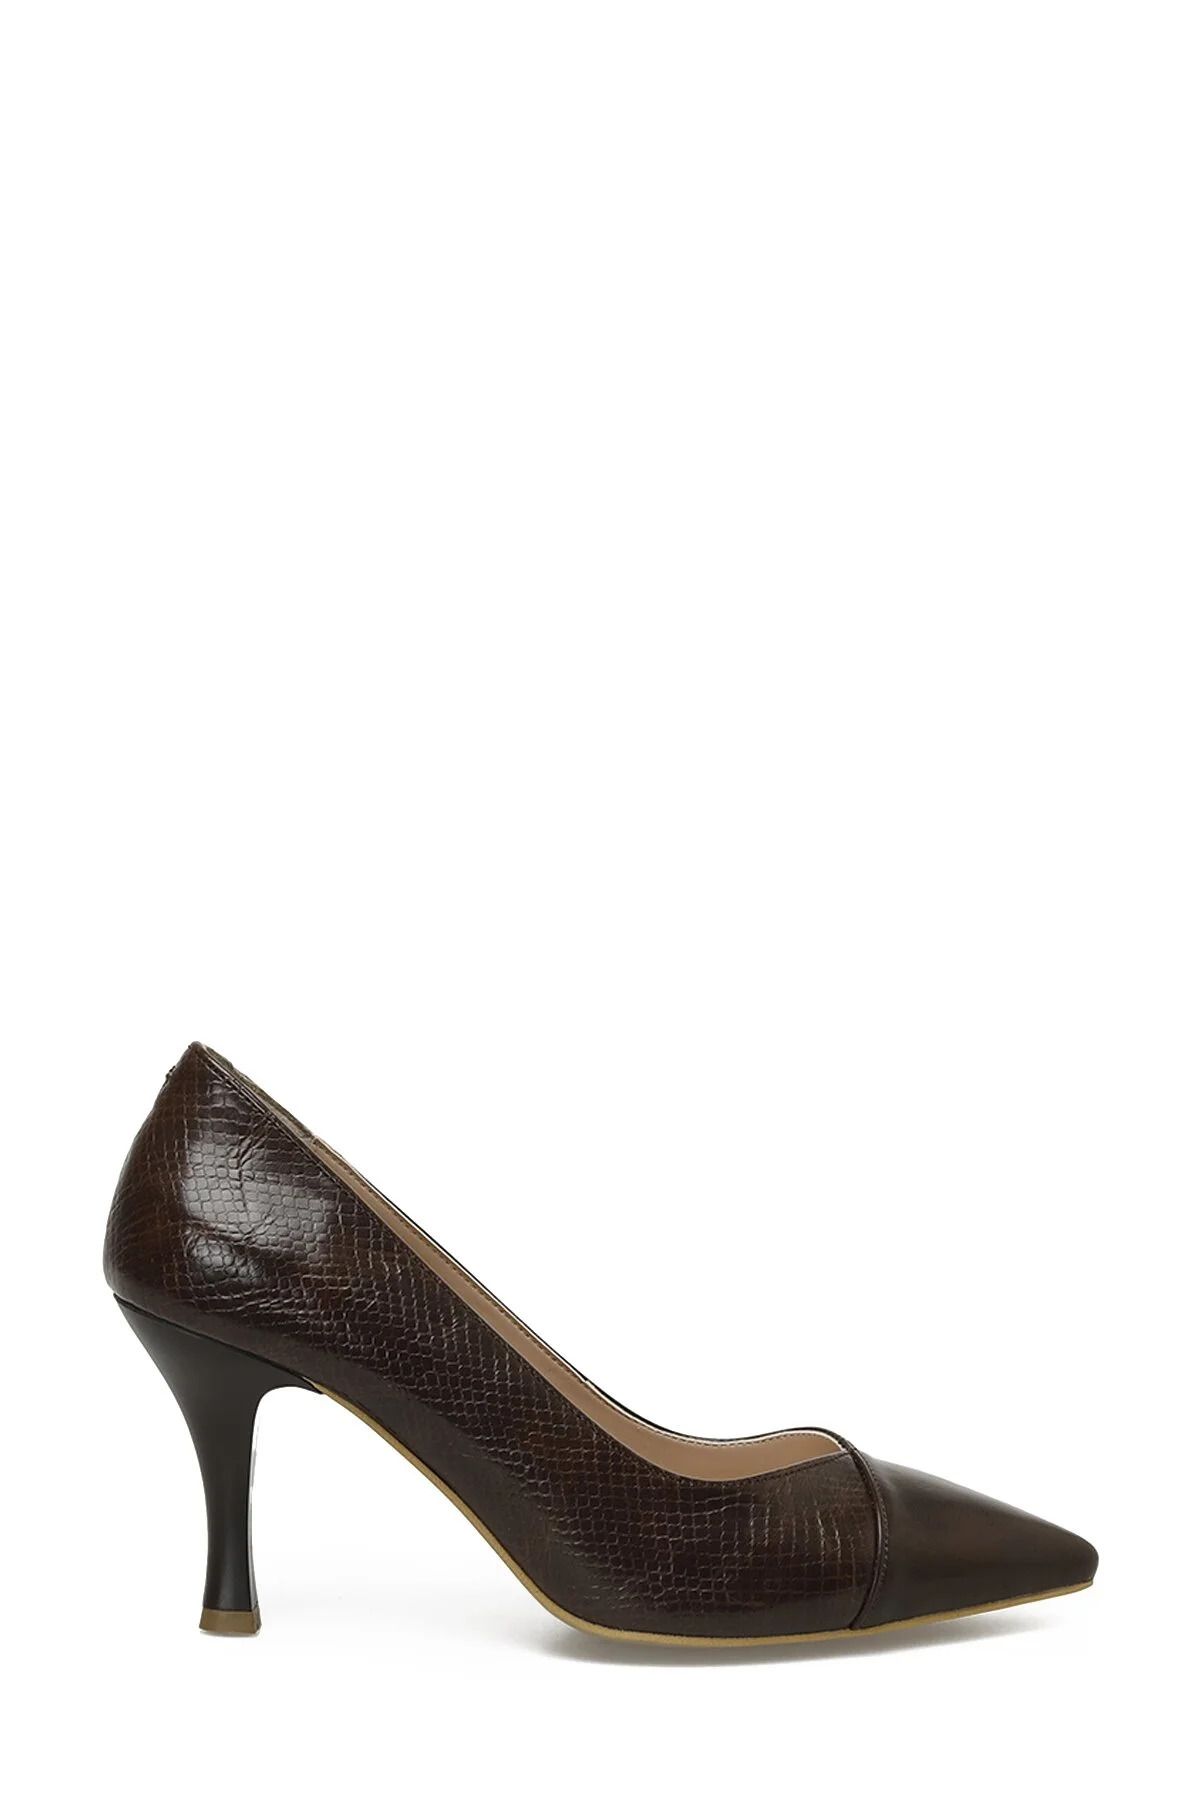 Polaris 322043.Z 3PR Kahverengi Kadın Topuklu Ayakkabı